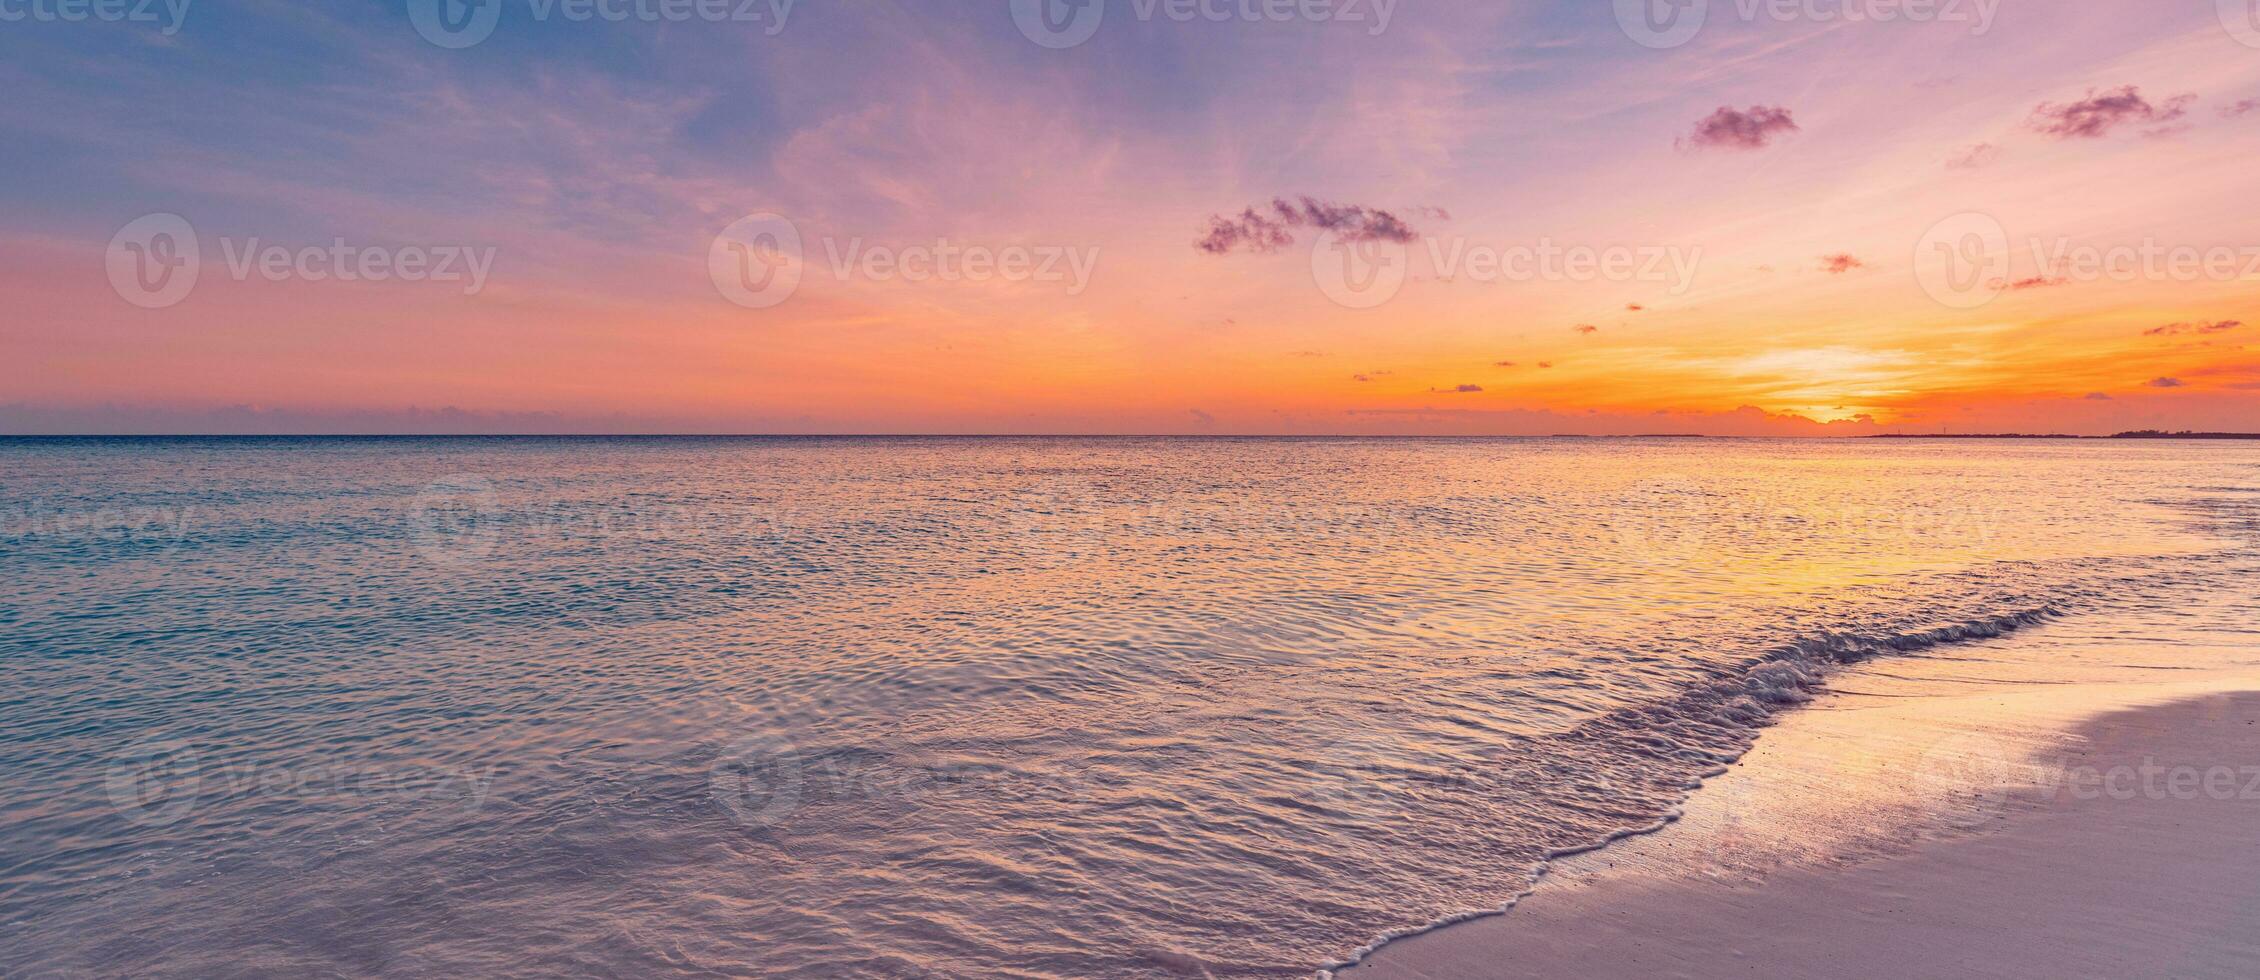 Nahaufnahme Meer Sandstrand. Panorama Strandlandschaft. inspirieren tropischen Strand Meerblick Horizont. orange und golden sonnenuntergang himmel ruhe ruhige entspannende sonnenlicht sommerstimmung. urlaub reisen urlaub banner foto